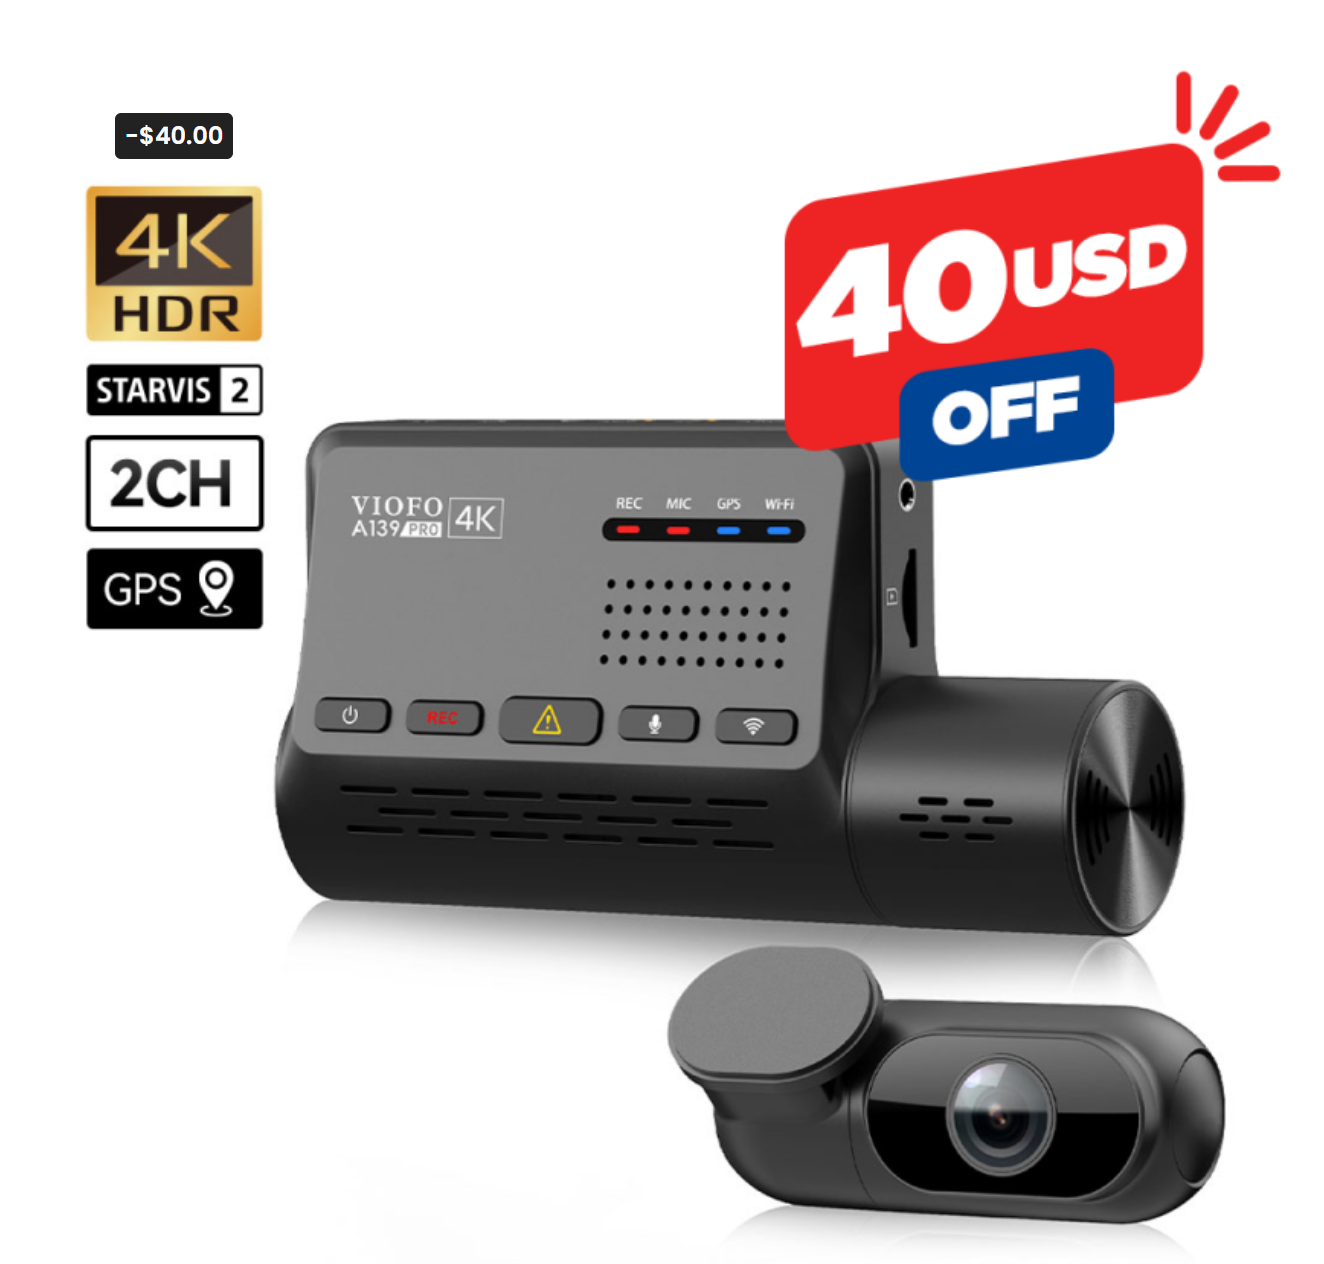 Viofo A139 Pro 4k Dashcam 2CH kit $289.99 - $20 coupon = $269.99 no taxes (YMMV)